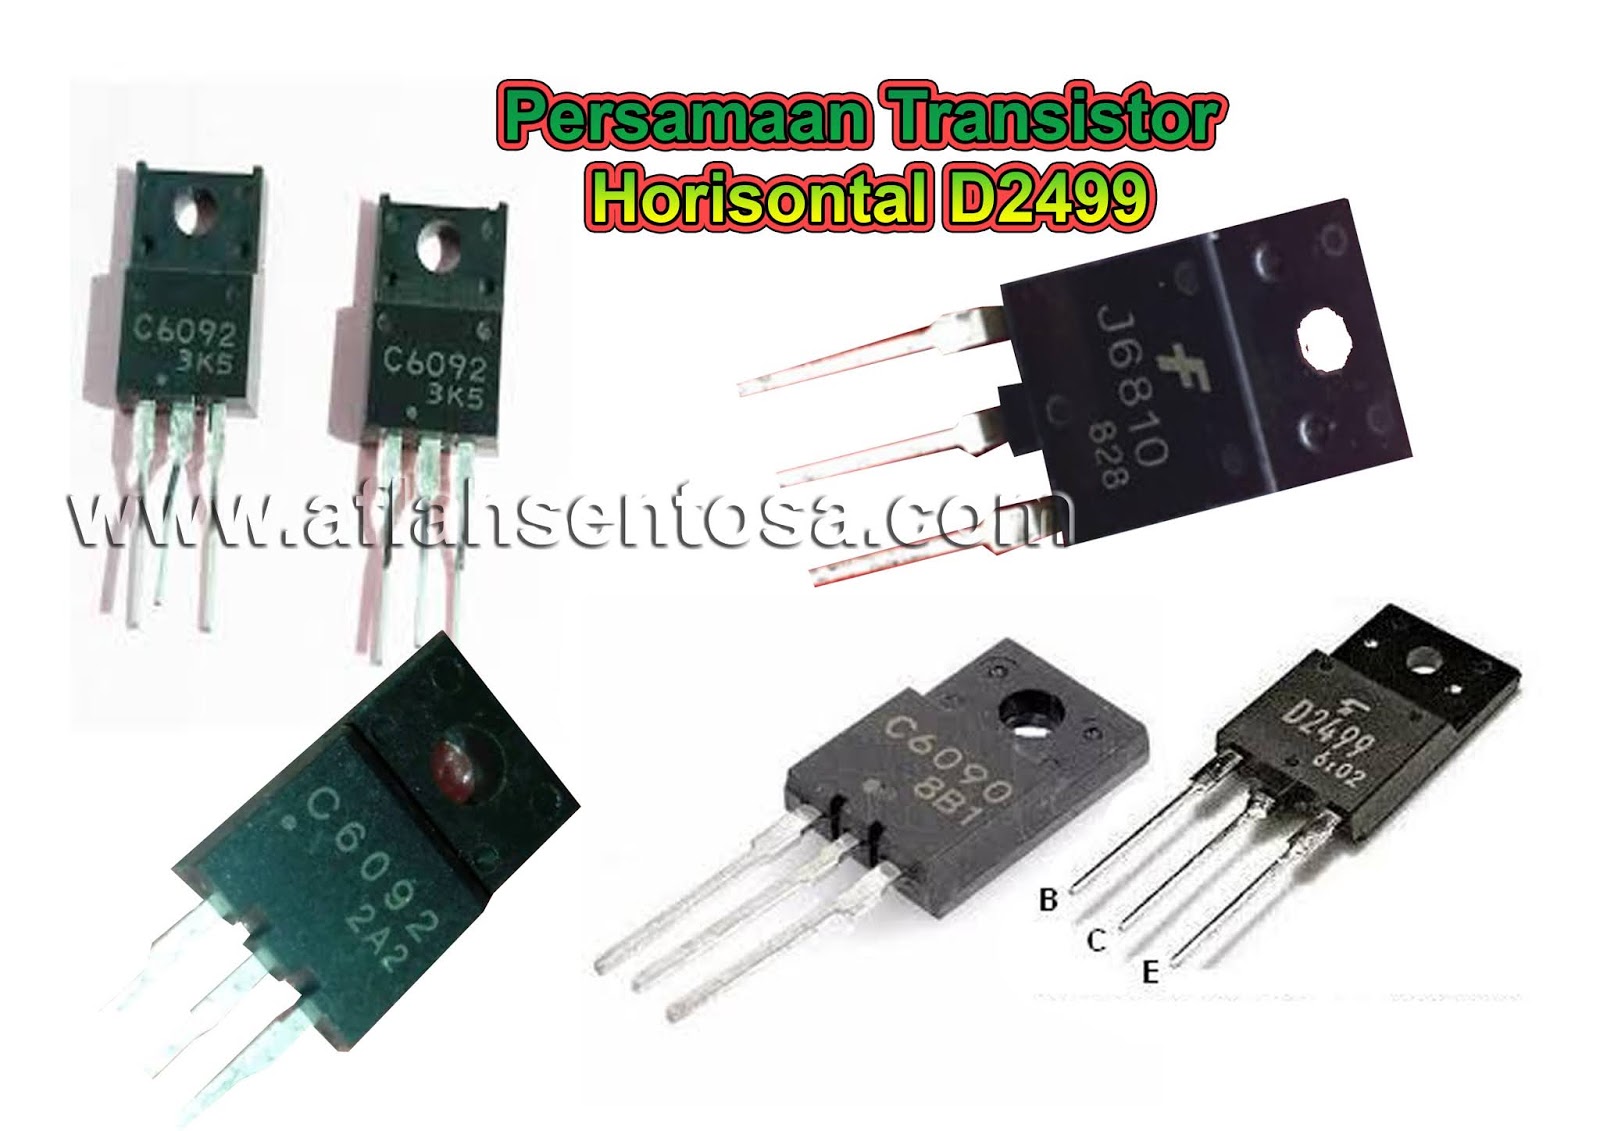 Persamaan Transistor Horisontal D2499 Aflah Sentosa